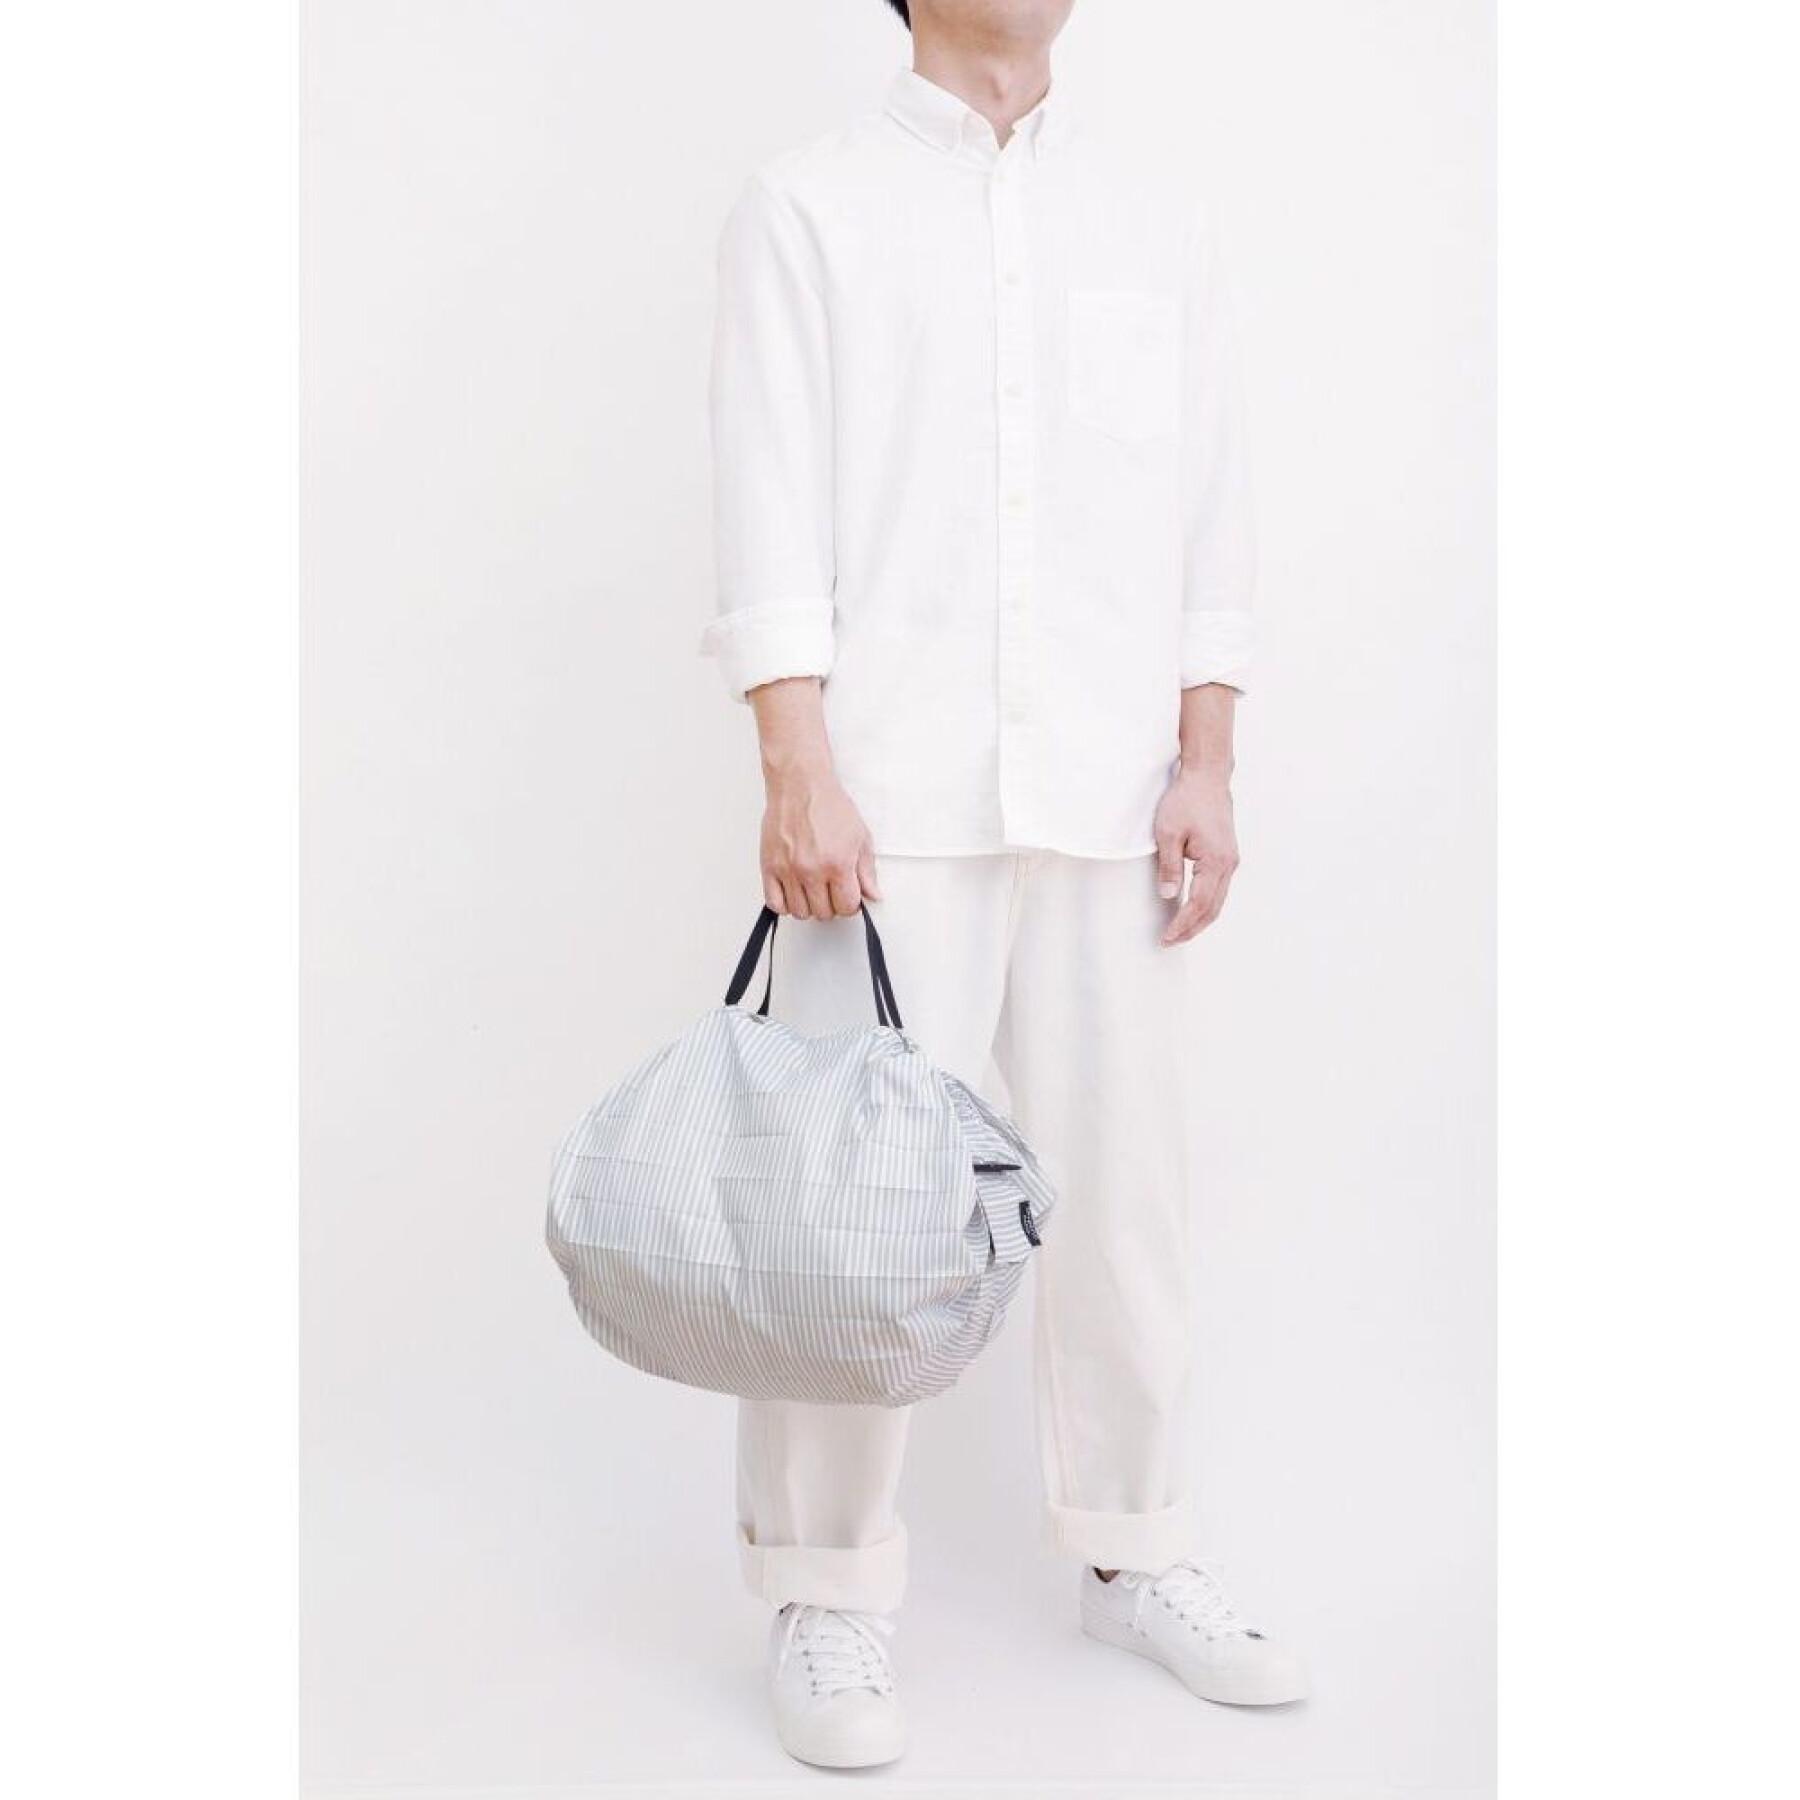 Foldable handbag Marna